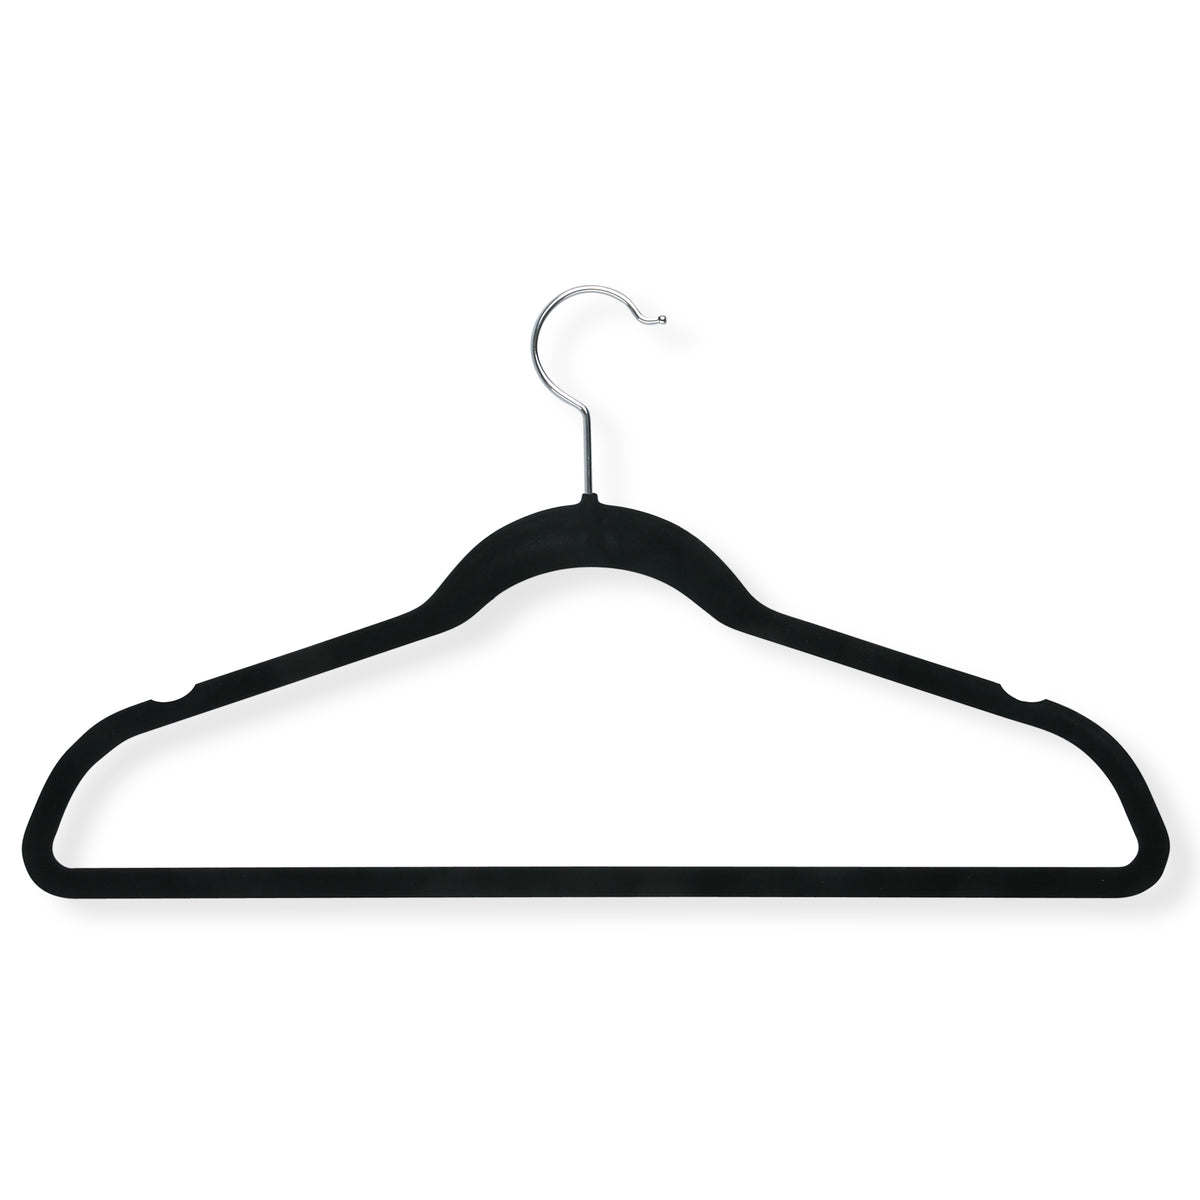 Made By Design 19pk Non Slip Velvet pant Hangers in black, READ